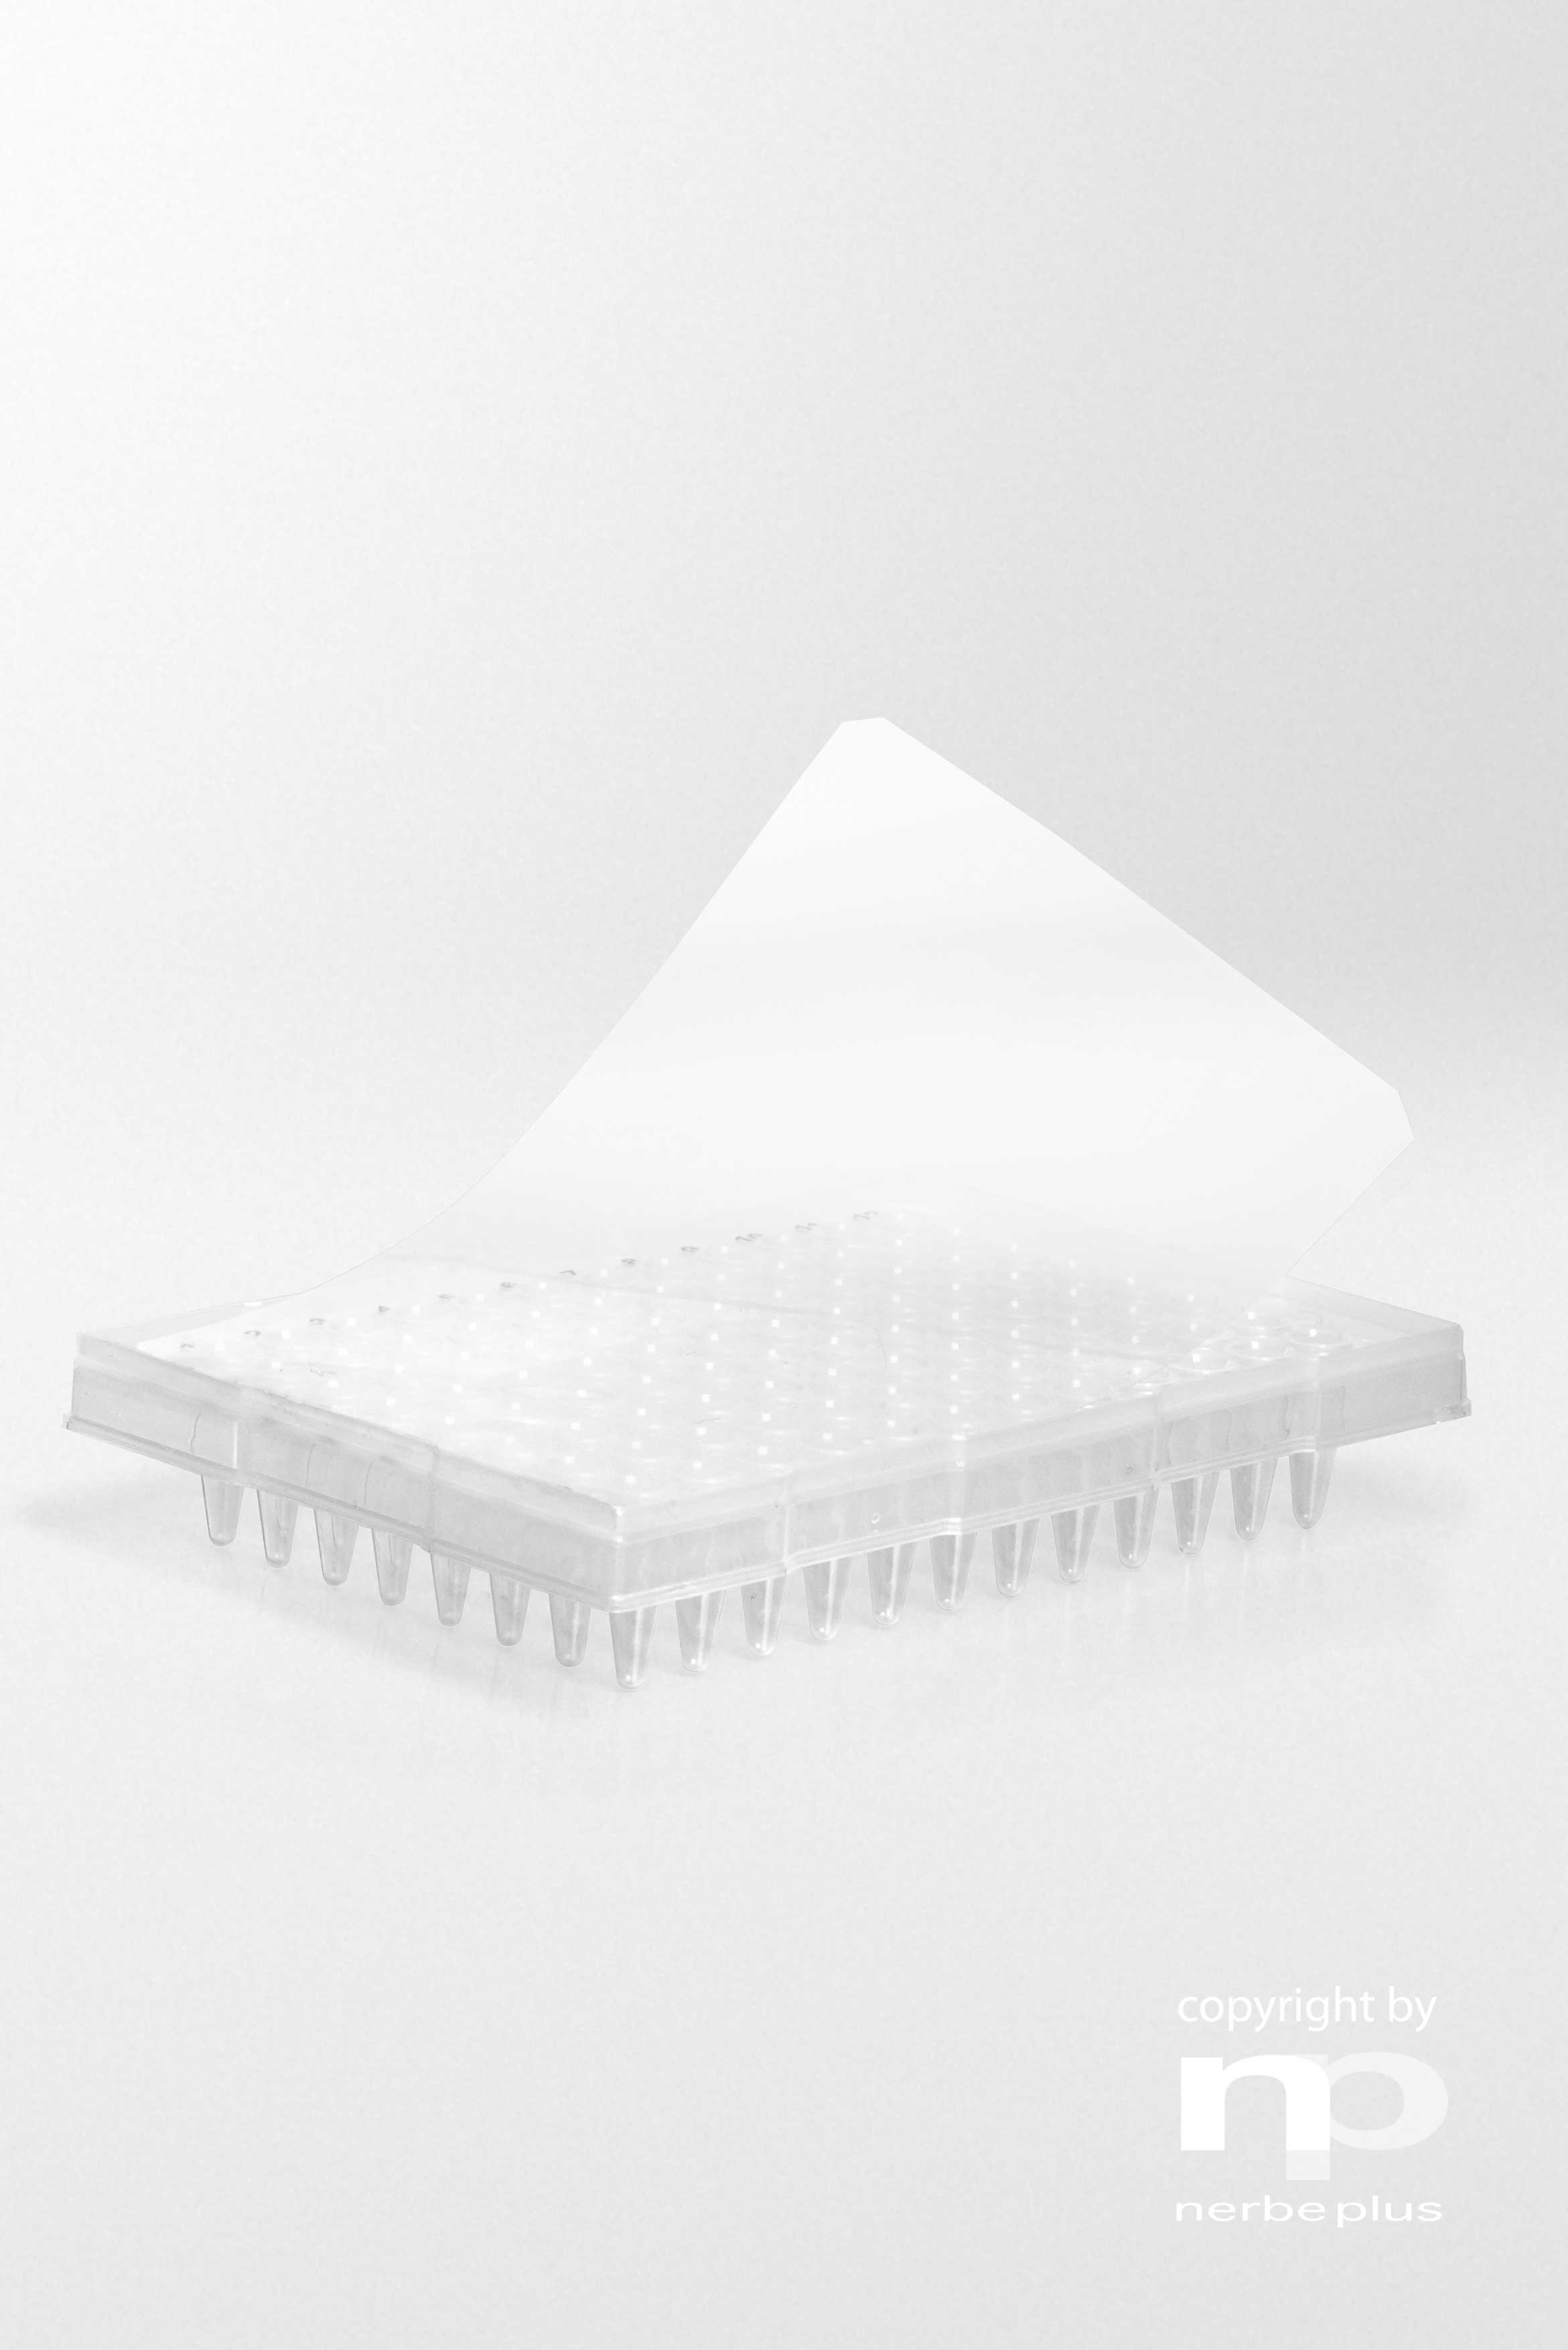 Alfombrillas selladoras adhesivas. NERBE-PLUS. Descripción: Alfombrilla selladora adhesiva para placas con borde alto y para PCR Tiempo Real. Material: Polietileno. Grosor (µm): 50. Rango Temp. (ºC): -40 a 120. Esterilidad: PCR Ready. qPCR: Sí